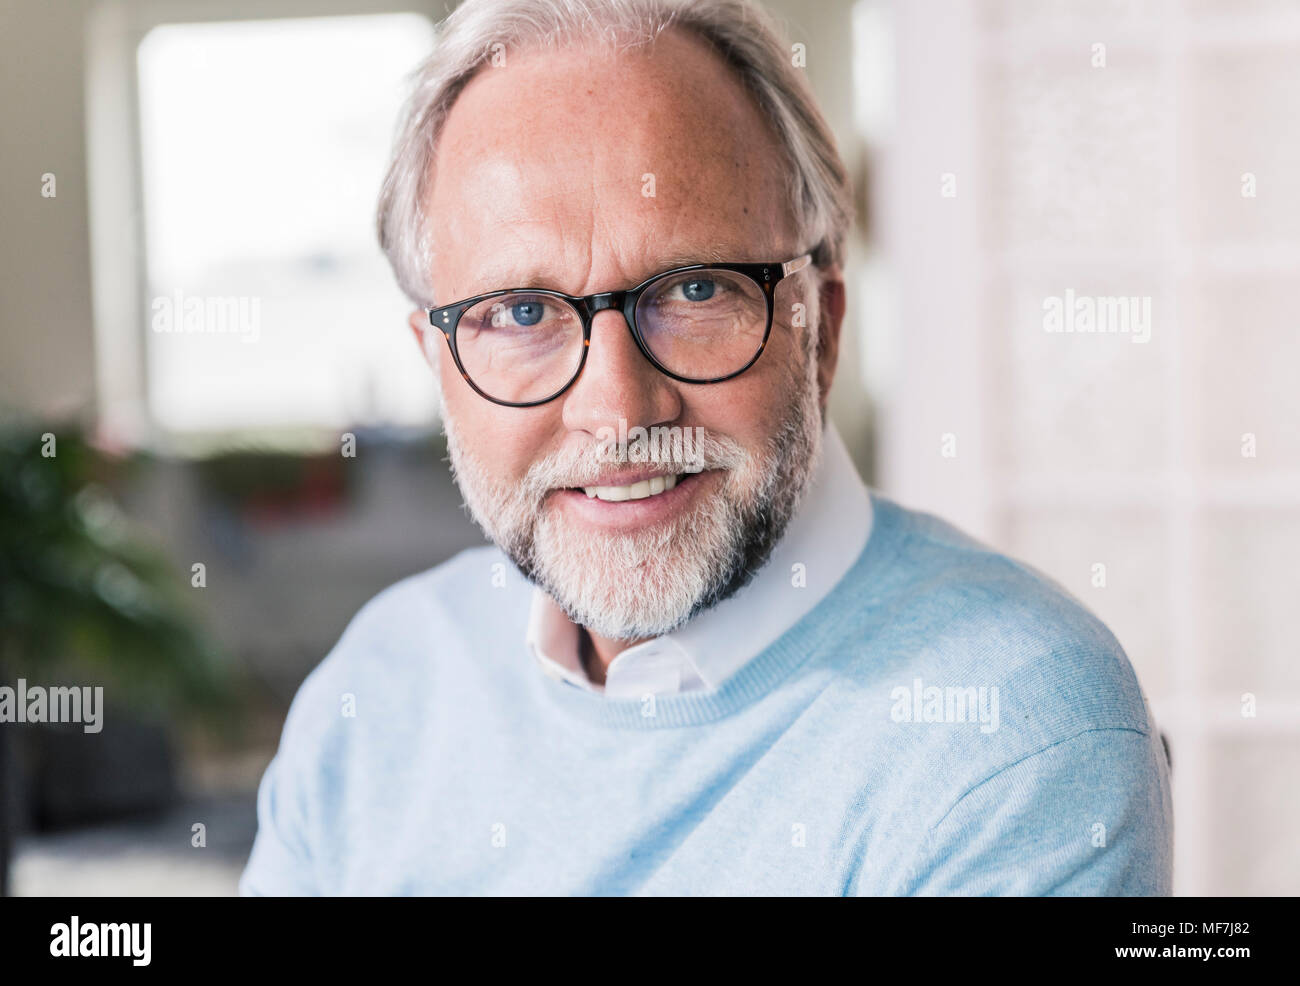 Ritratto di sorridere uomo maturo con i capelli grigi e la barba con gli occhiali Foto Stock